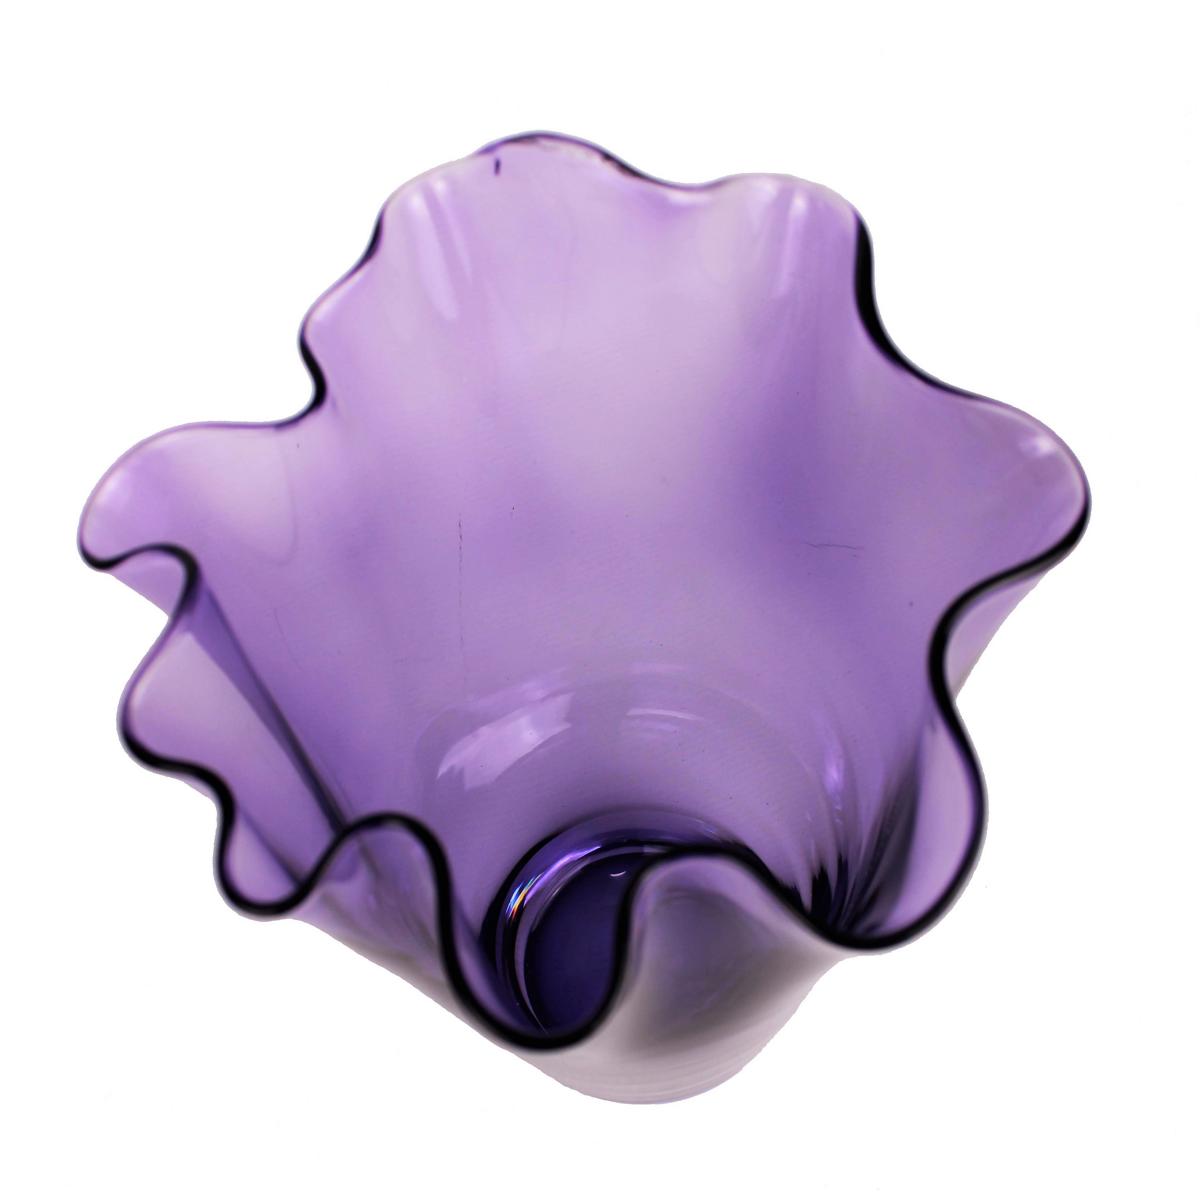 Vase aus Glas mit gewelltem Rand in violett